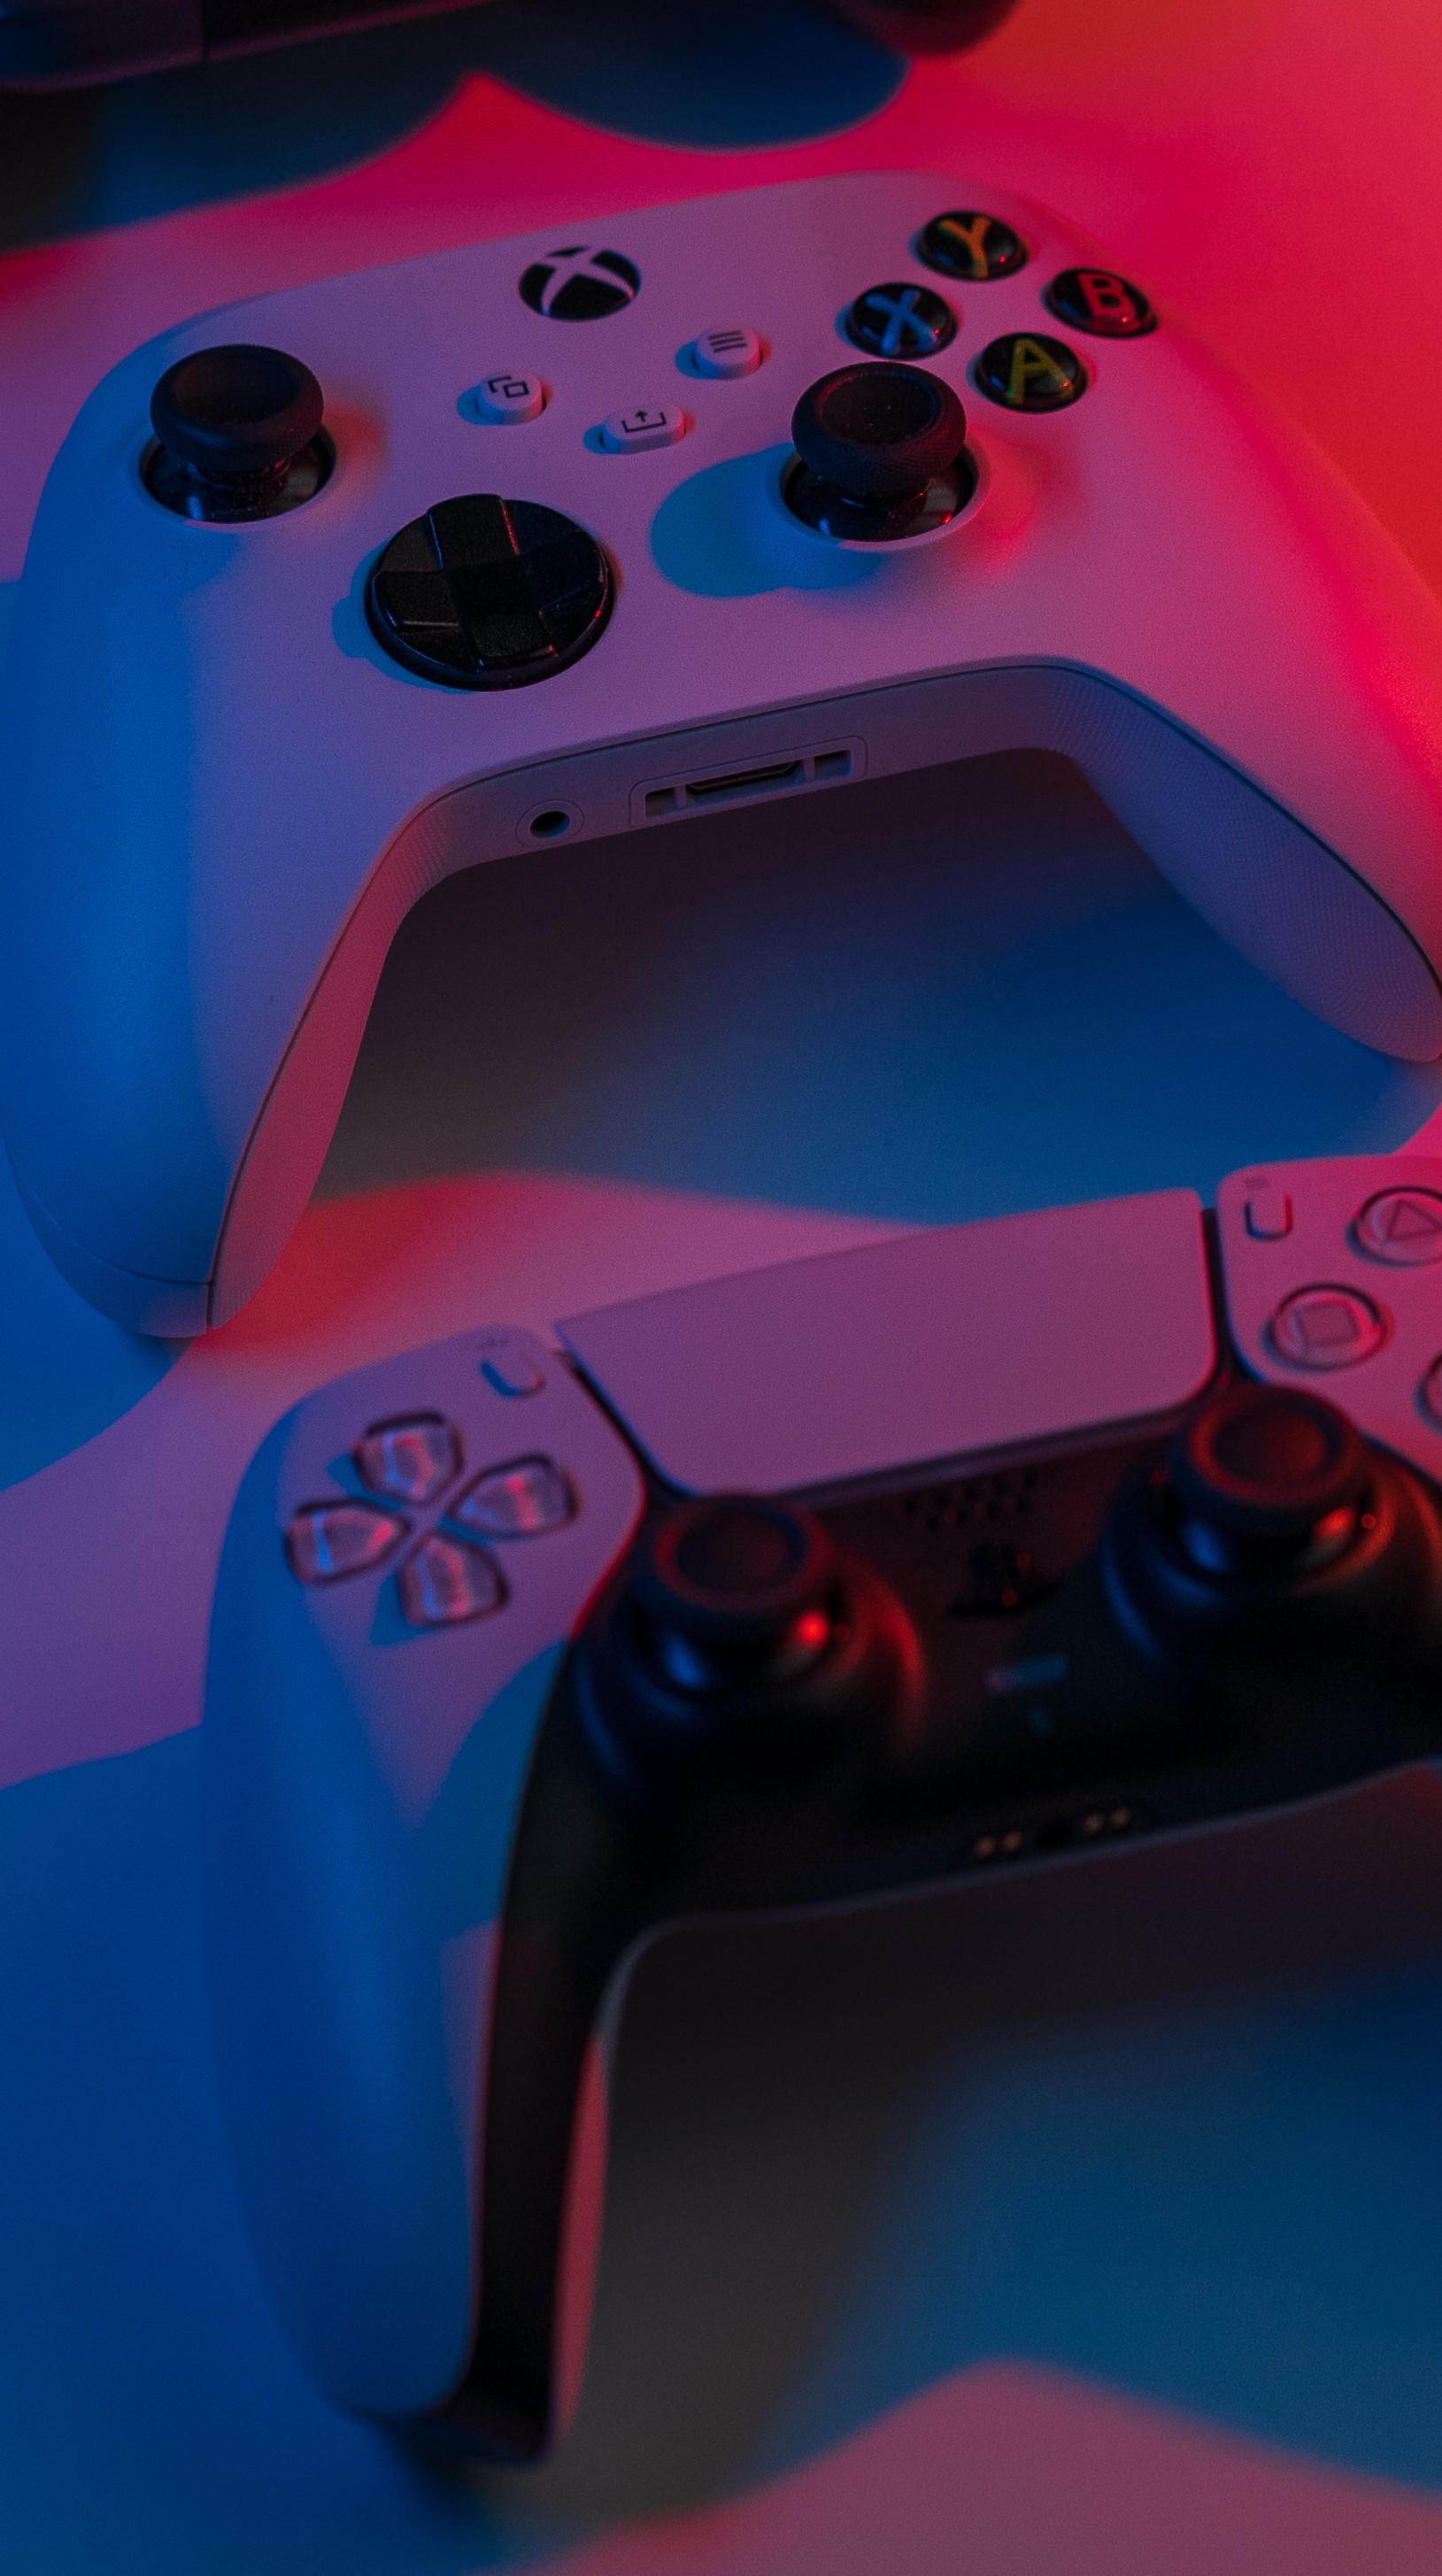 Desempenho incrível do Xbox Series X revelado - o PS5 pode acompanhar? -  Windows Club